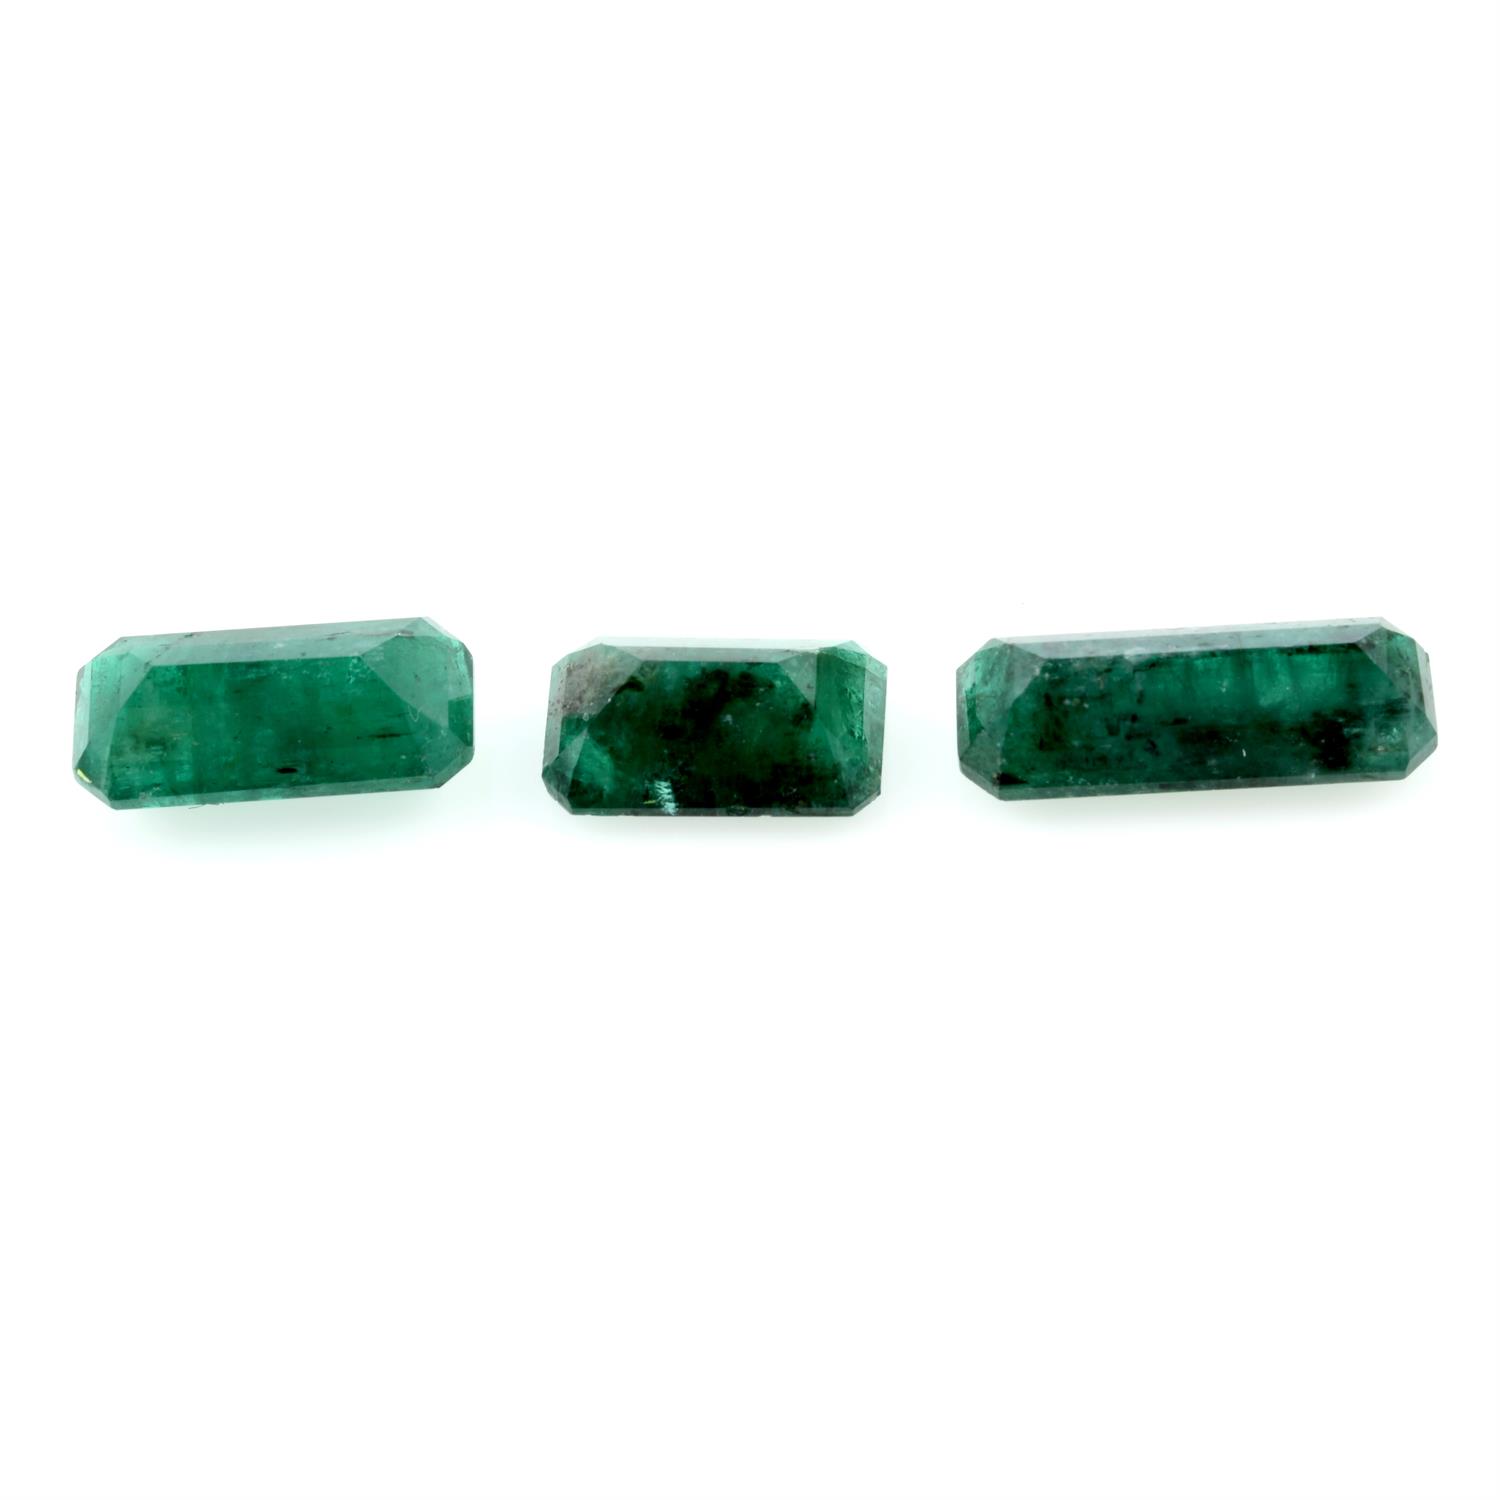 Three rectangular shape emeralds, weighing 11.92ct - Image 2 of 2